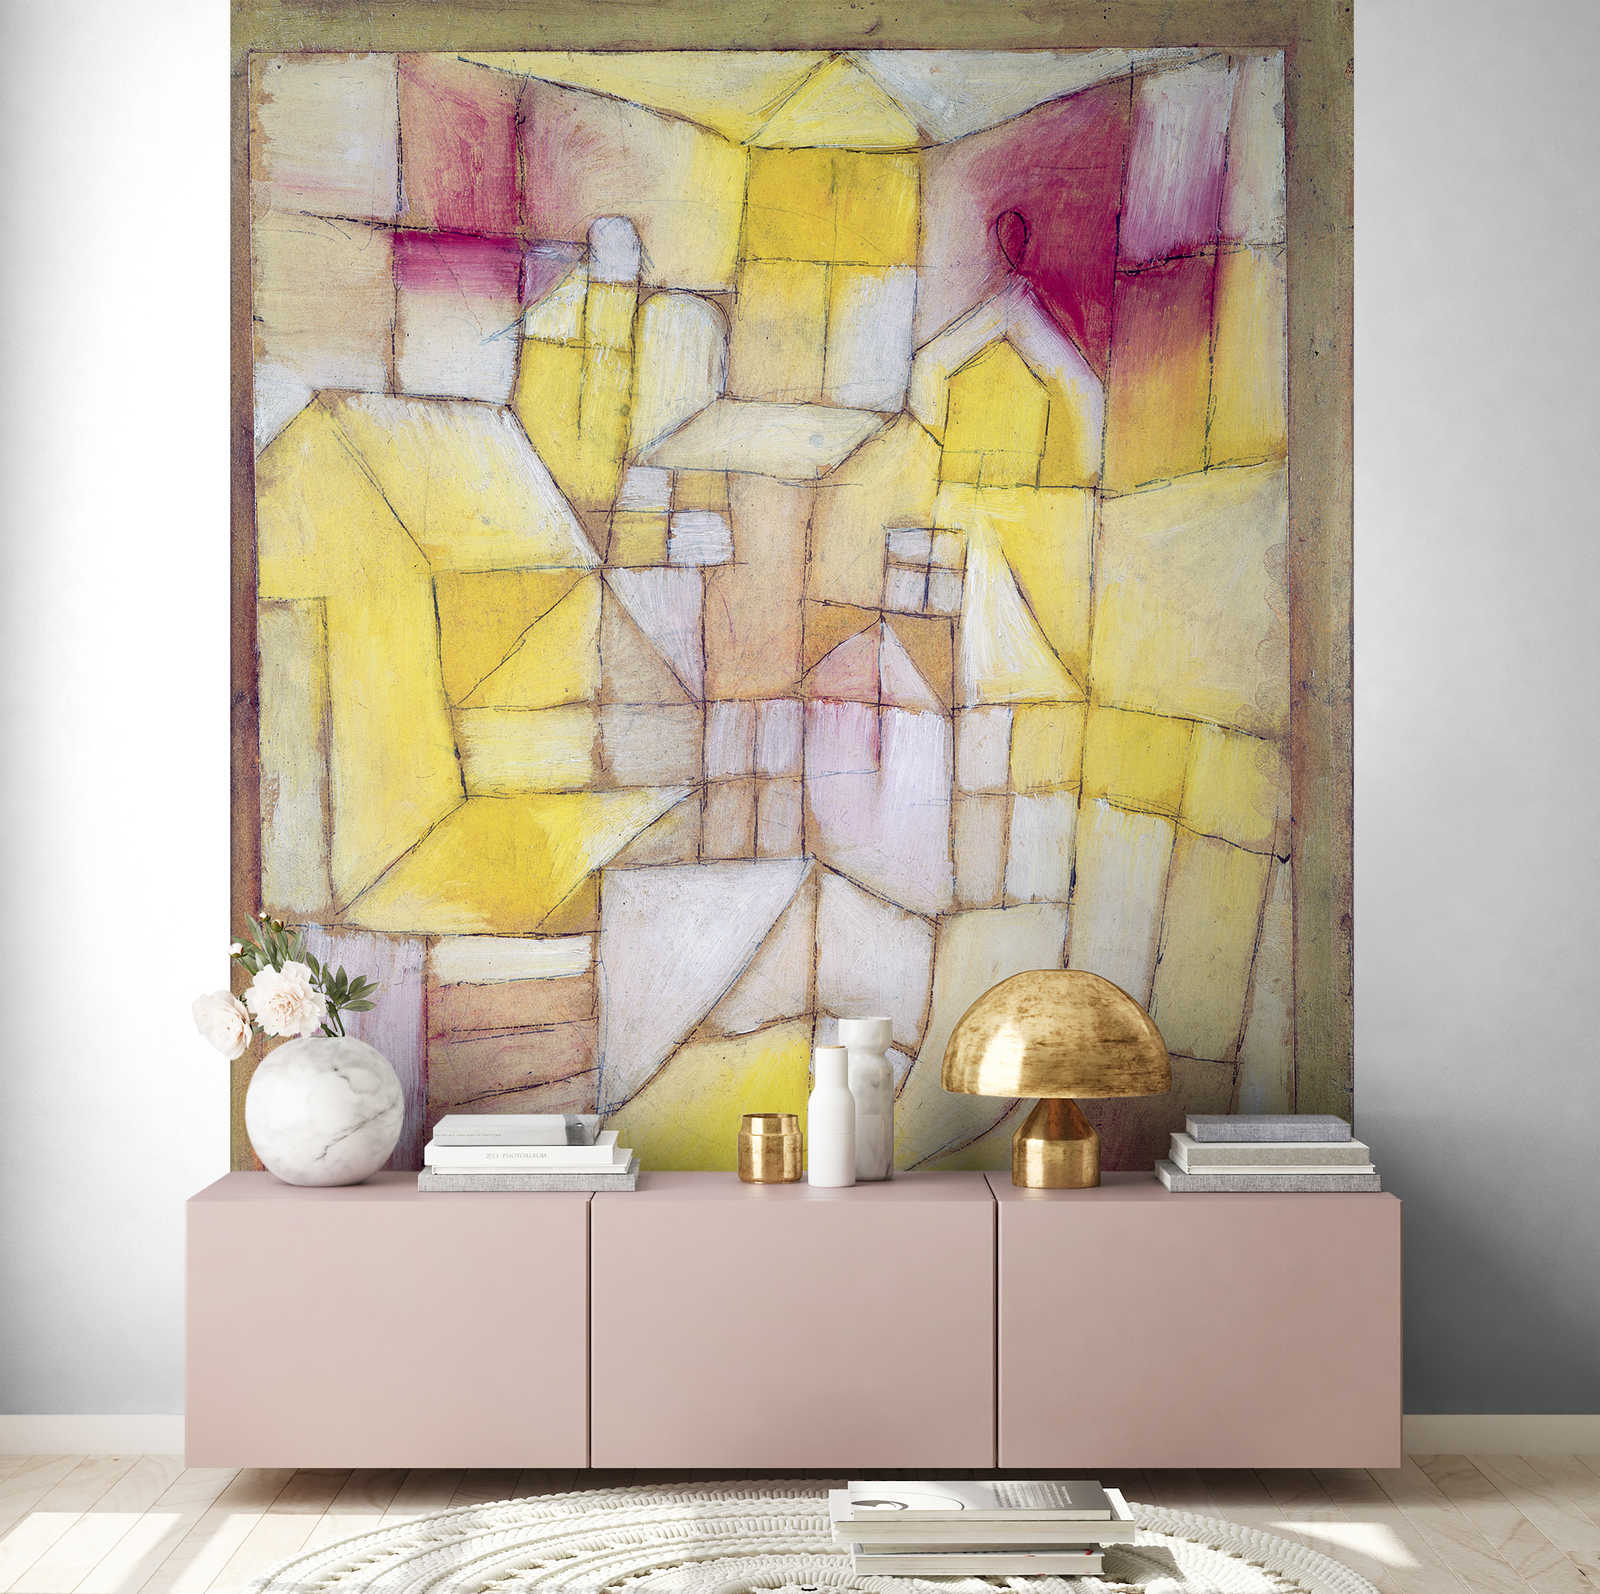             Mural "Rose-Jaune" de Paul Klee
        